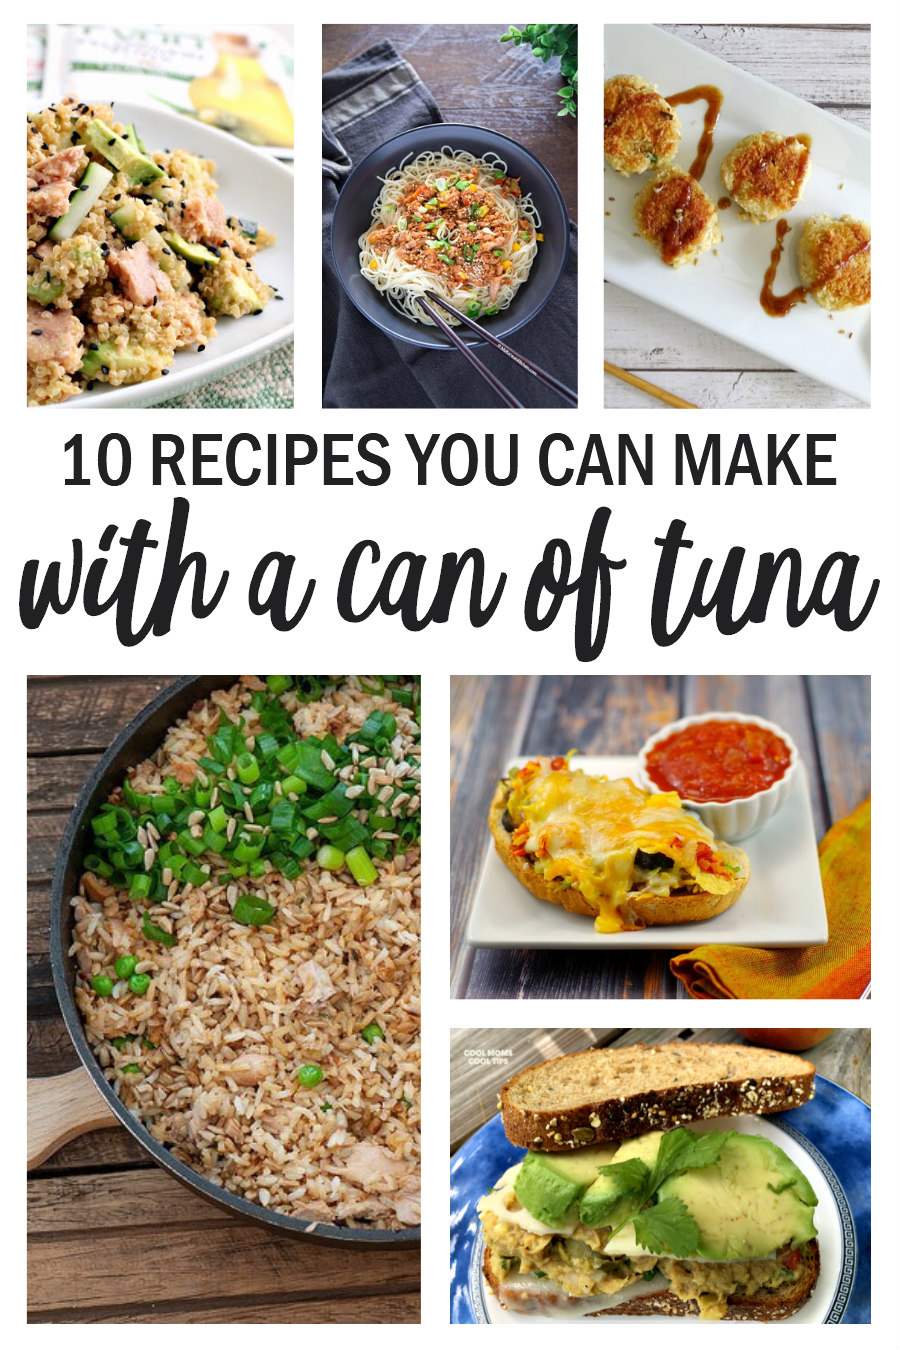 canned tuna recipes